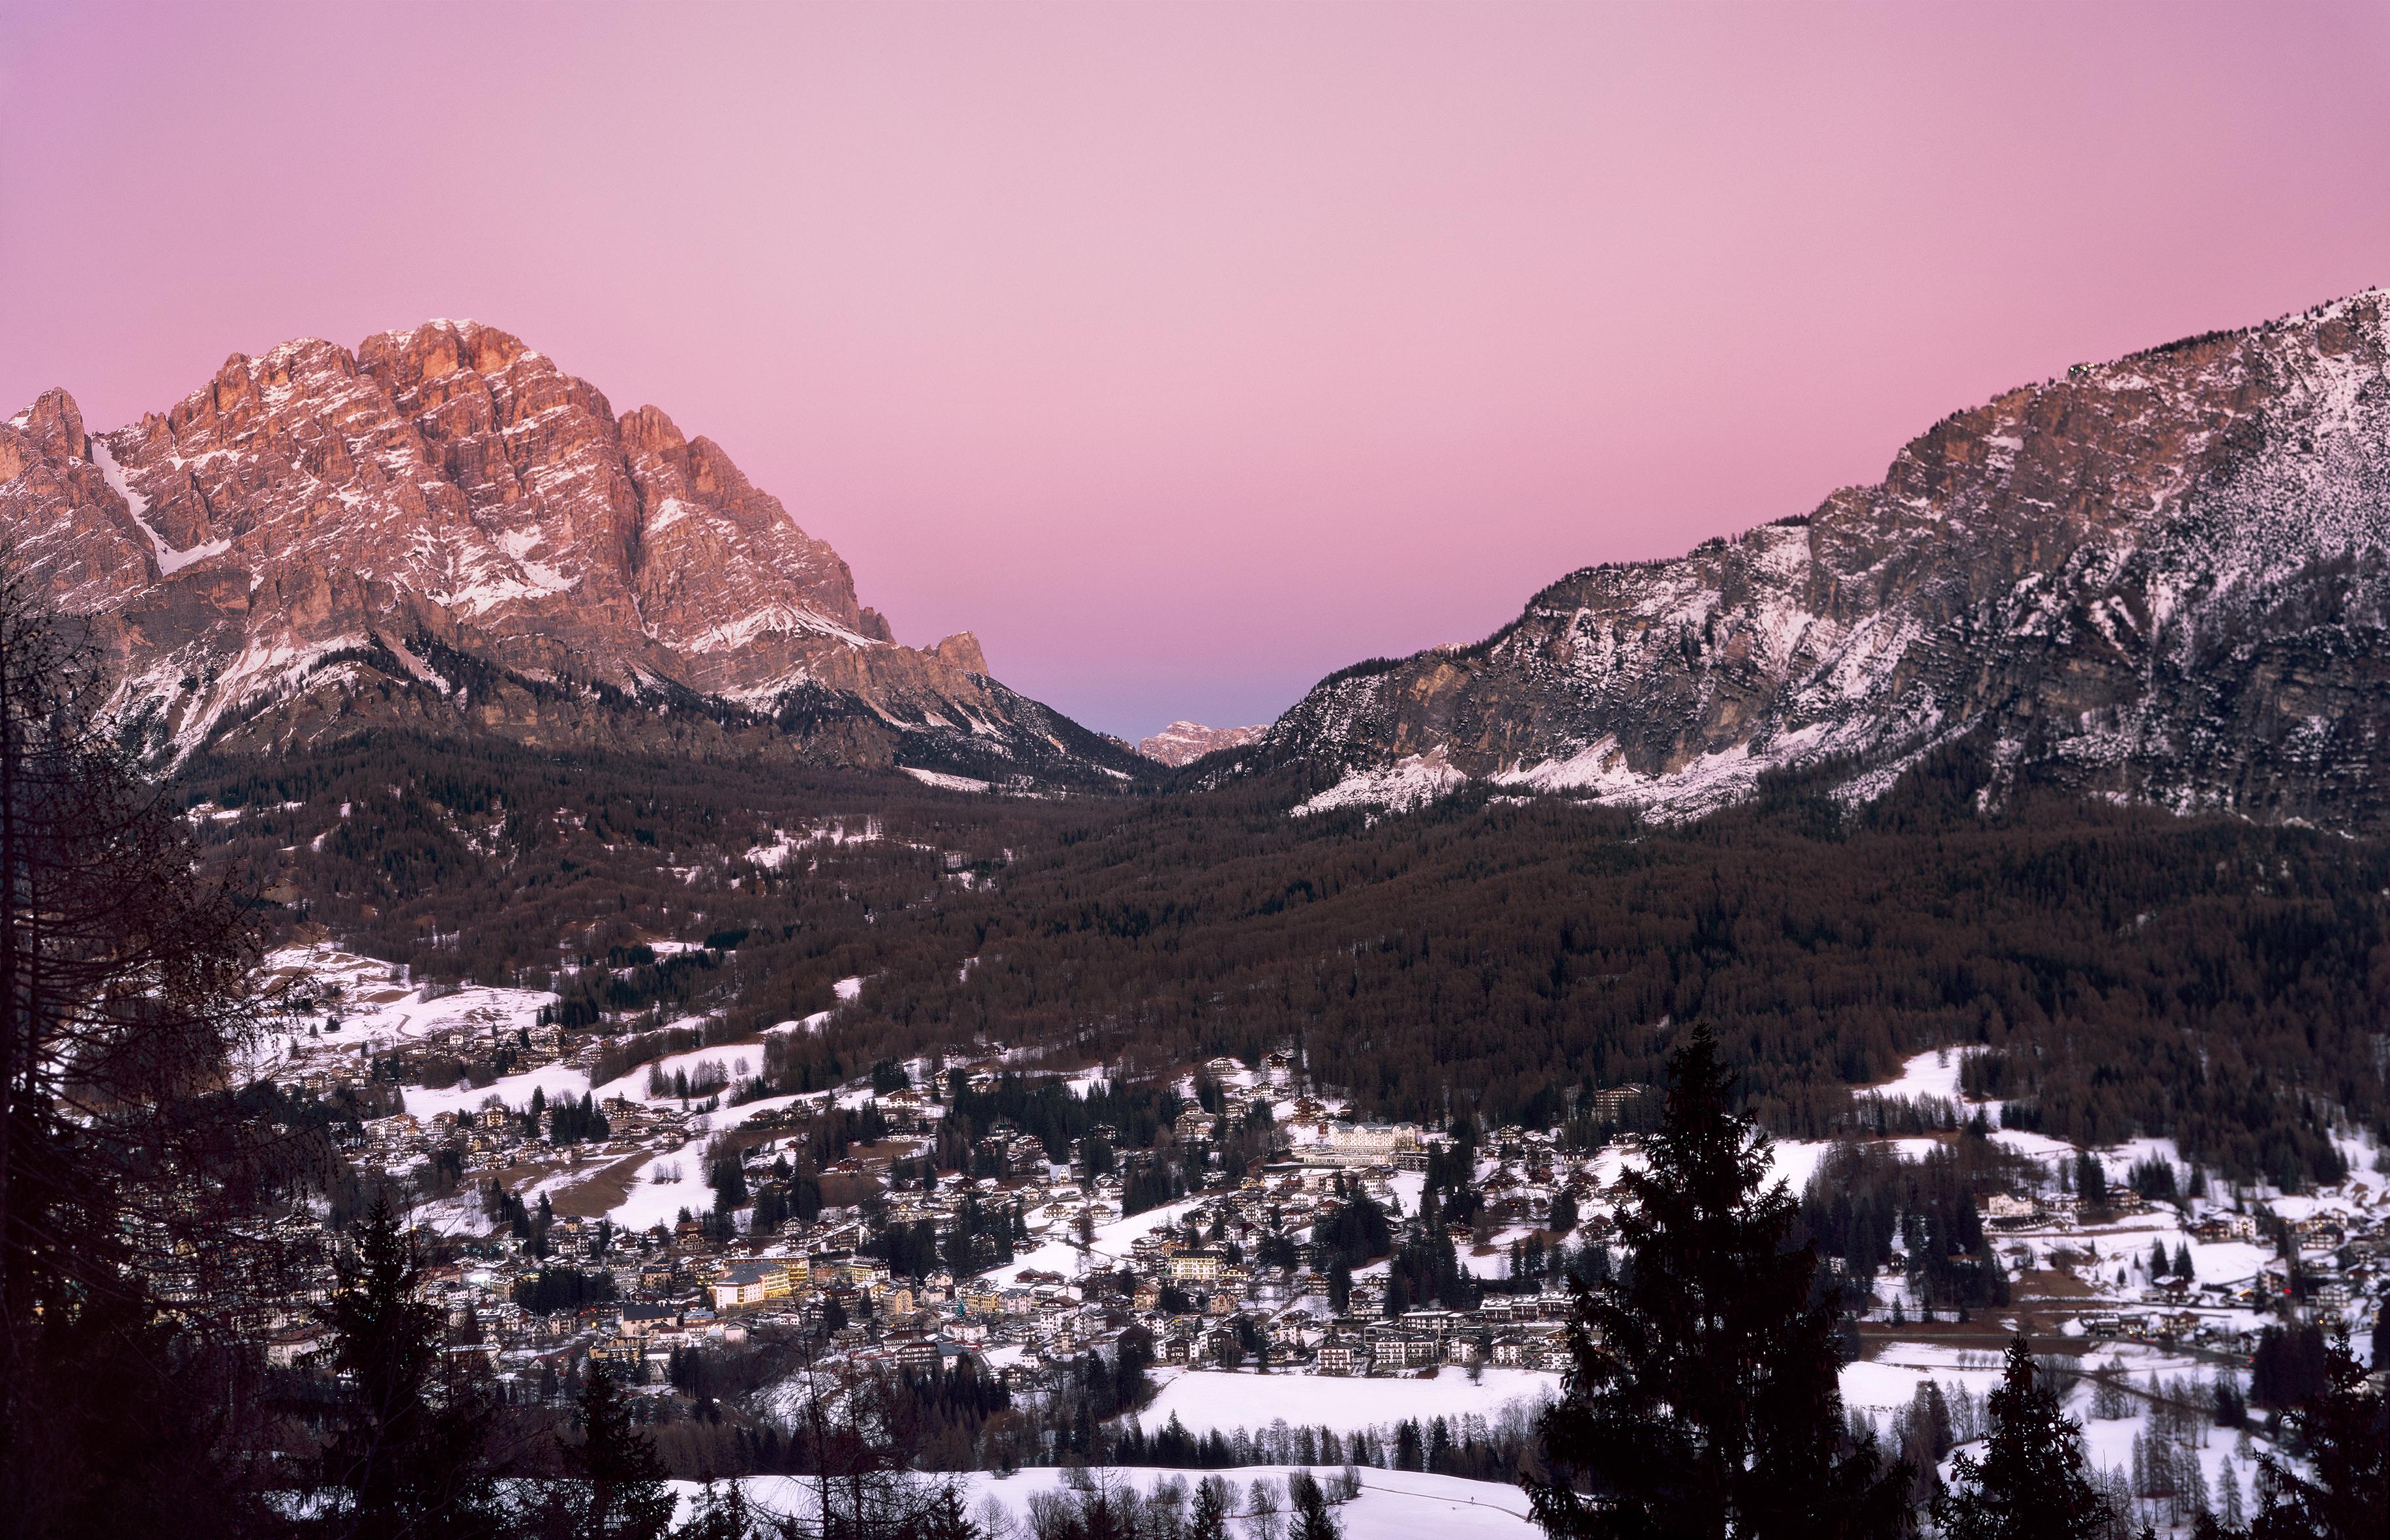 Landscape Photograph Ugne Pouwell - Cortina d'Ampezzo - Photographie analogique de coucher de soleil sur les Dolomites italiennes